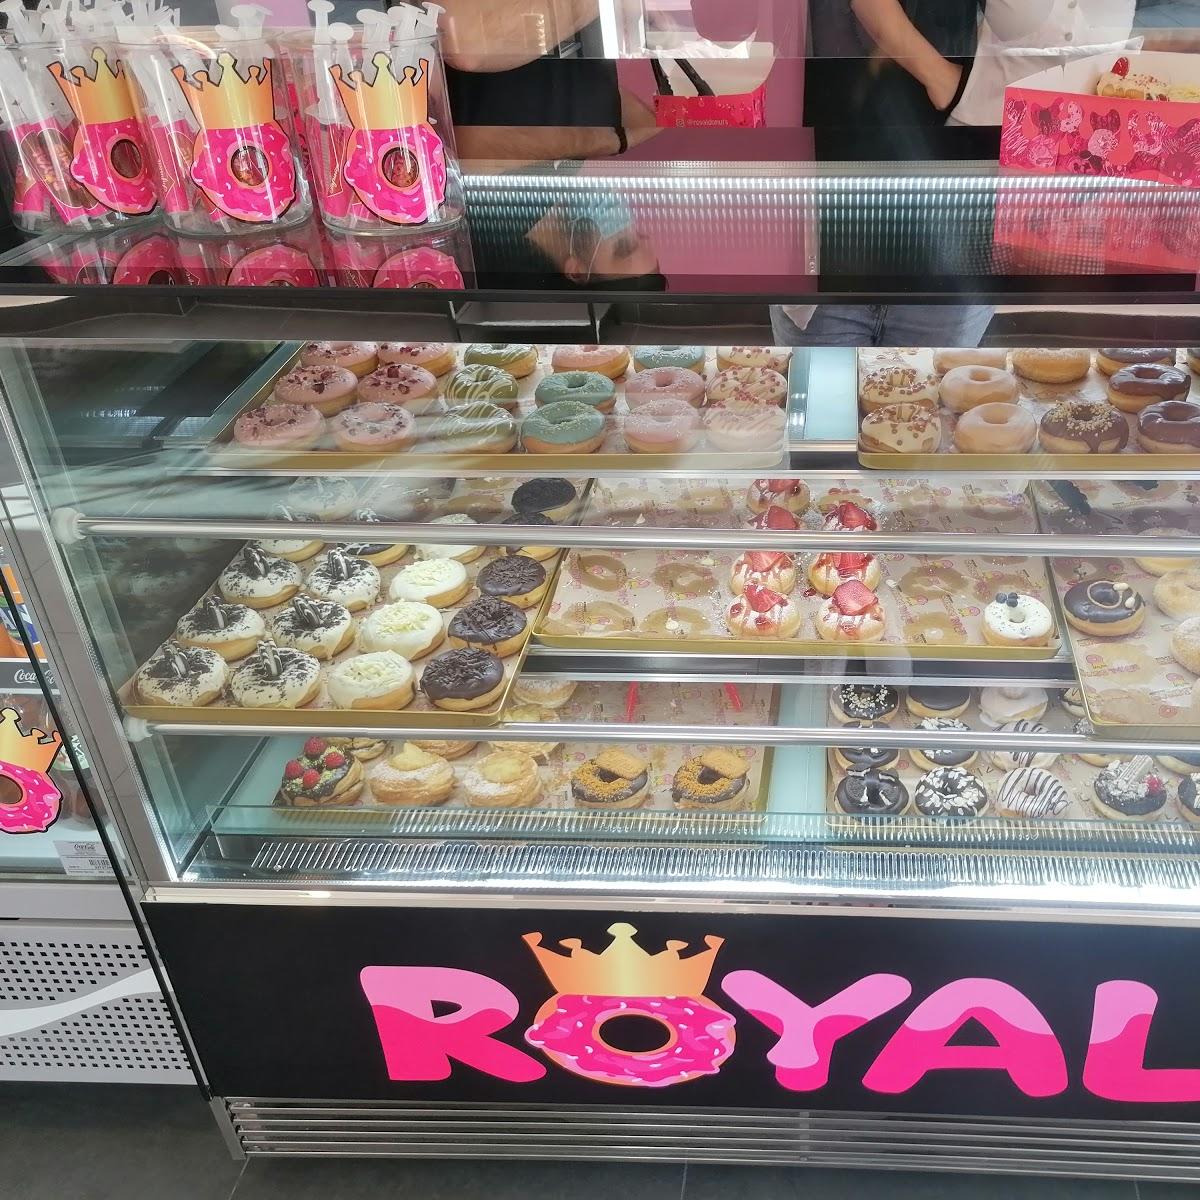 Restaurant "Royal Donuts" in Göttingen